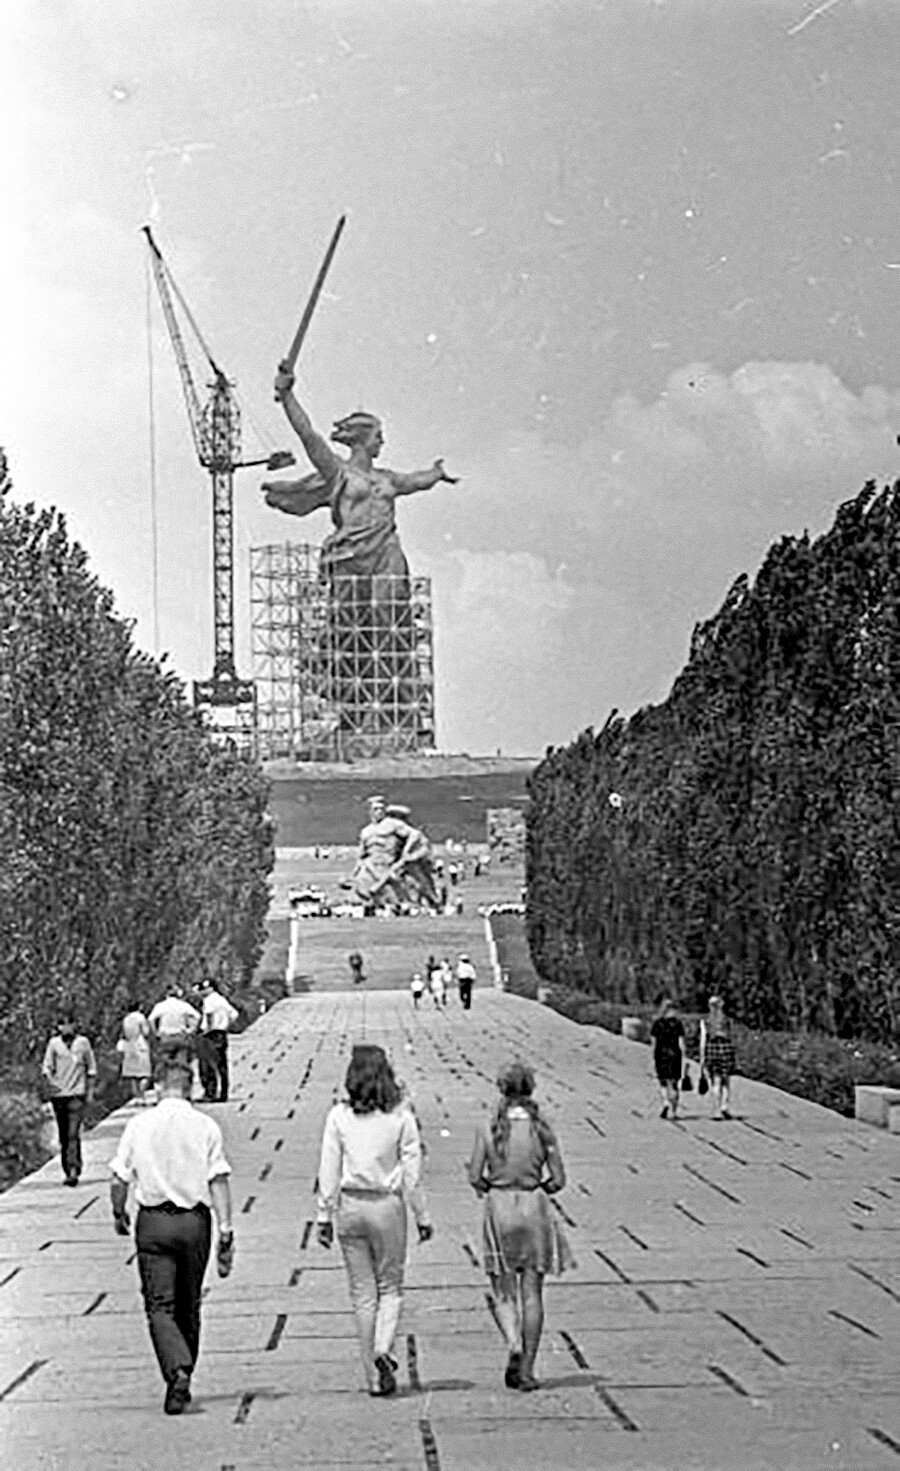 スターリングラード（現ヴォルゴグラード）の記念碑群「スターリングラードの戦いの英雄」とそのメインの像「母なる祖国が呼んでいる」は1960年代後半に建てられた